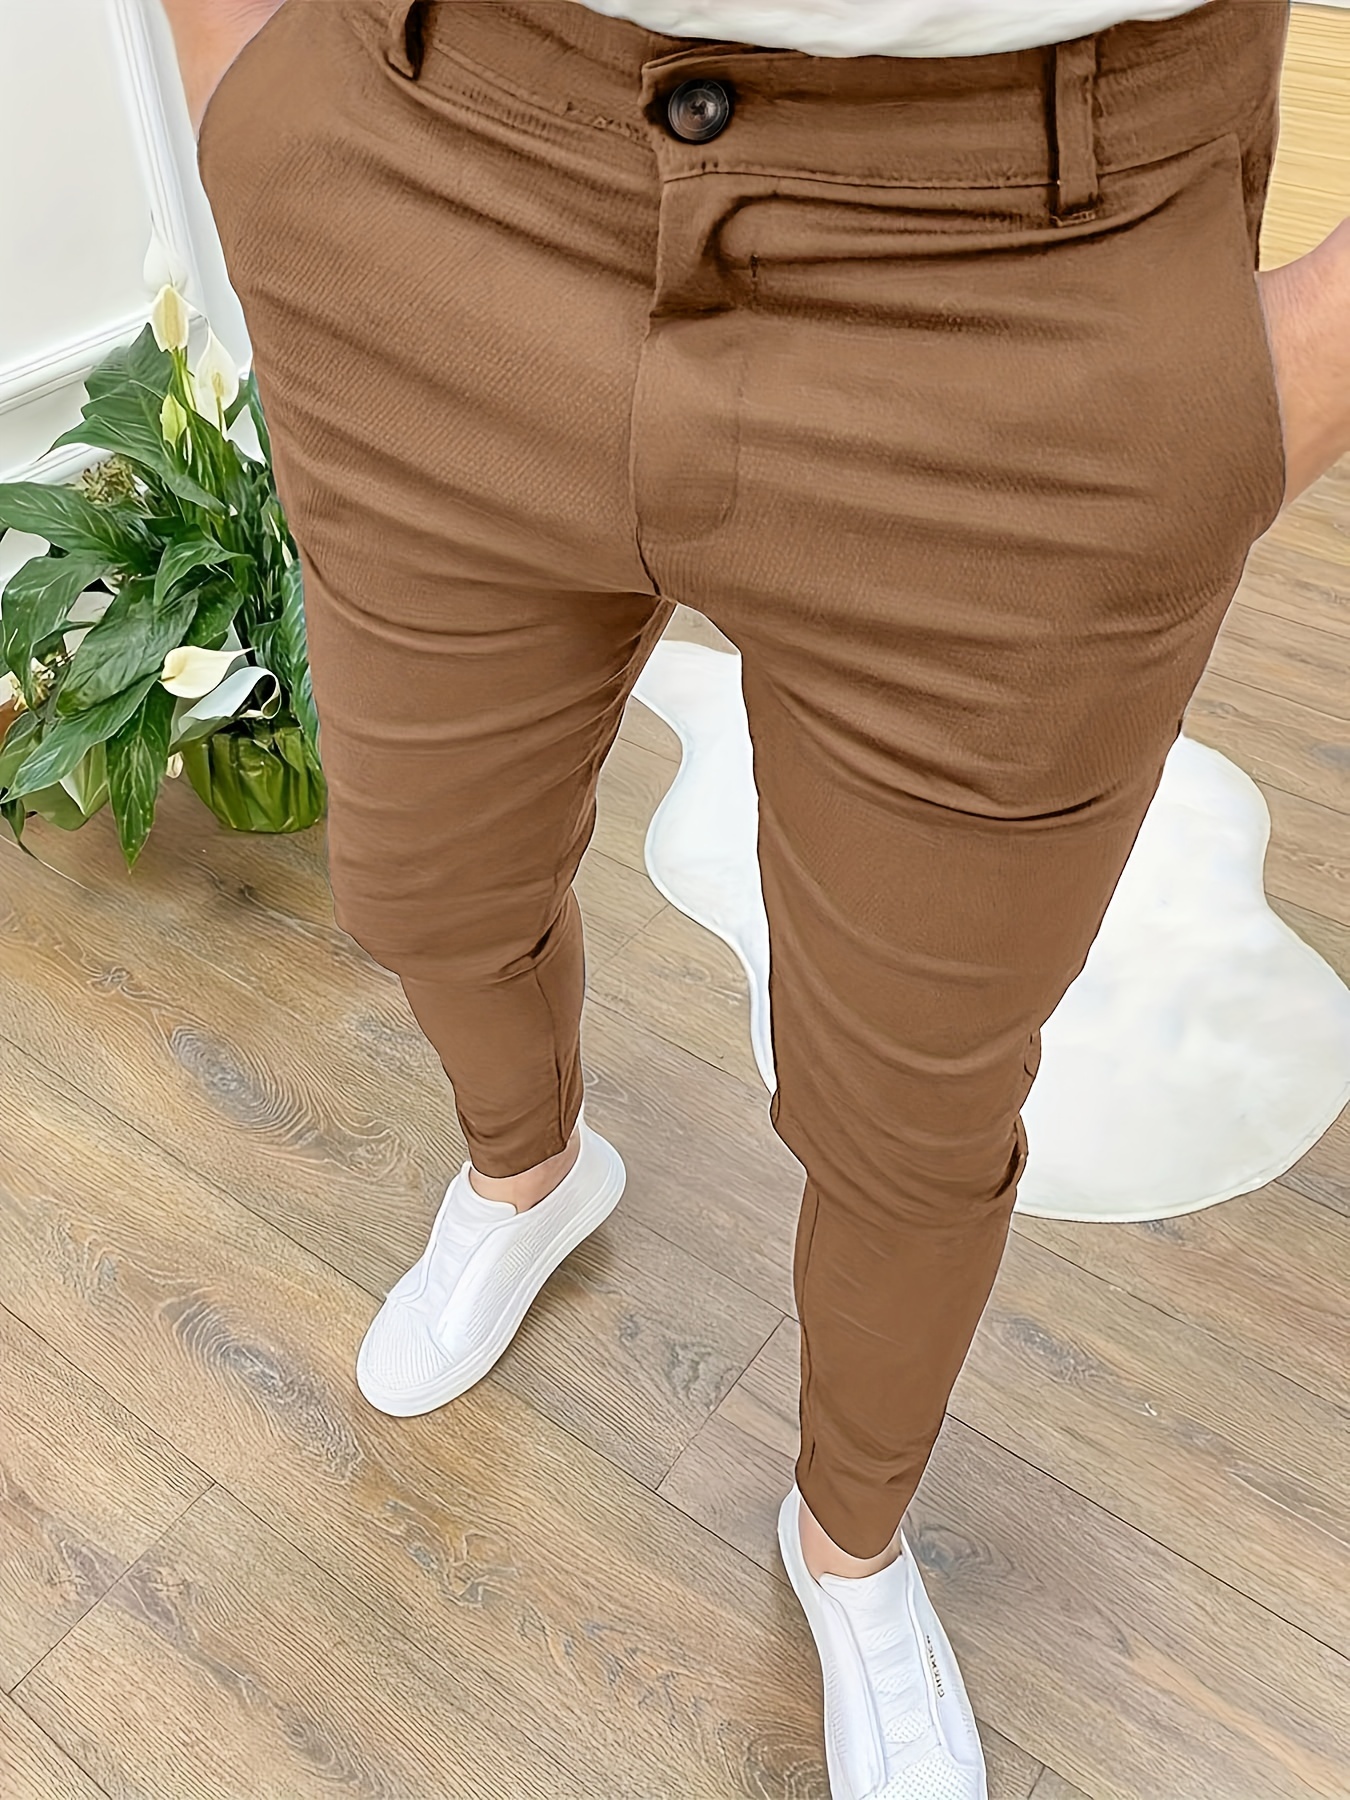 Brown, Pants For Women, Khaki, Chino & Dress Pants